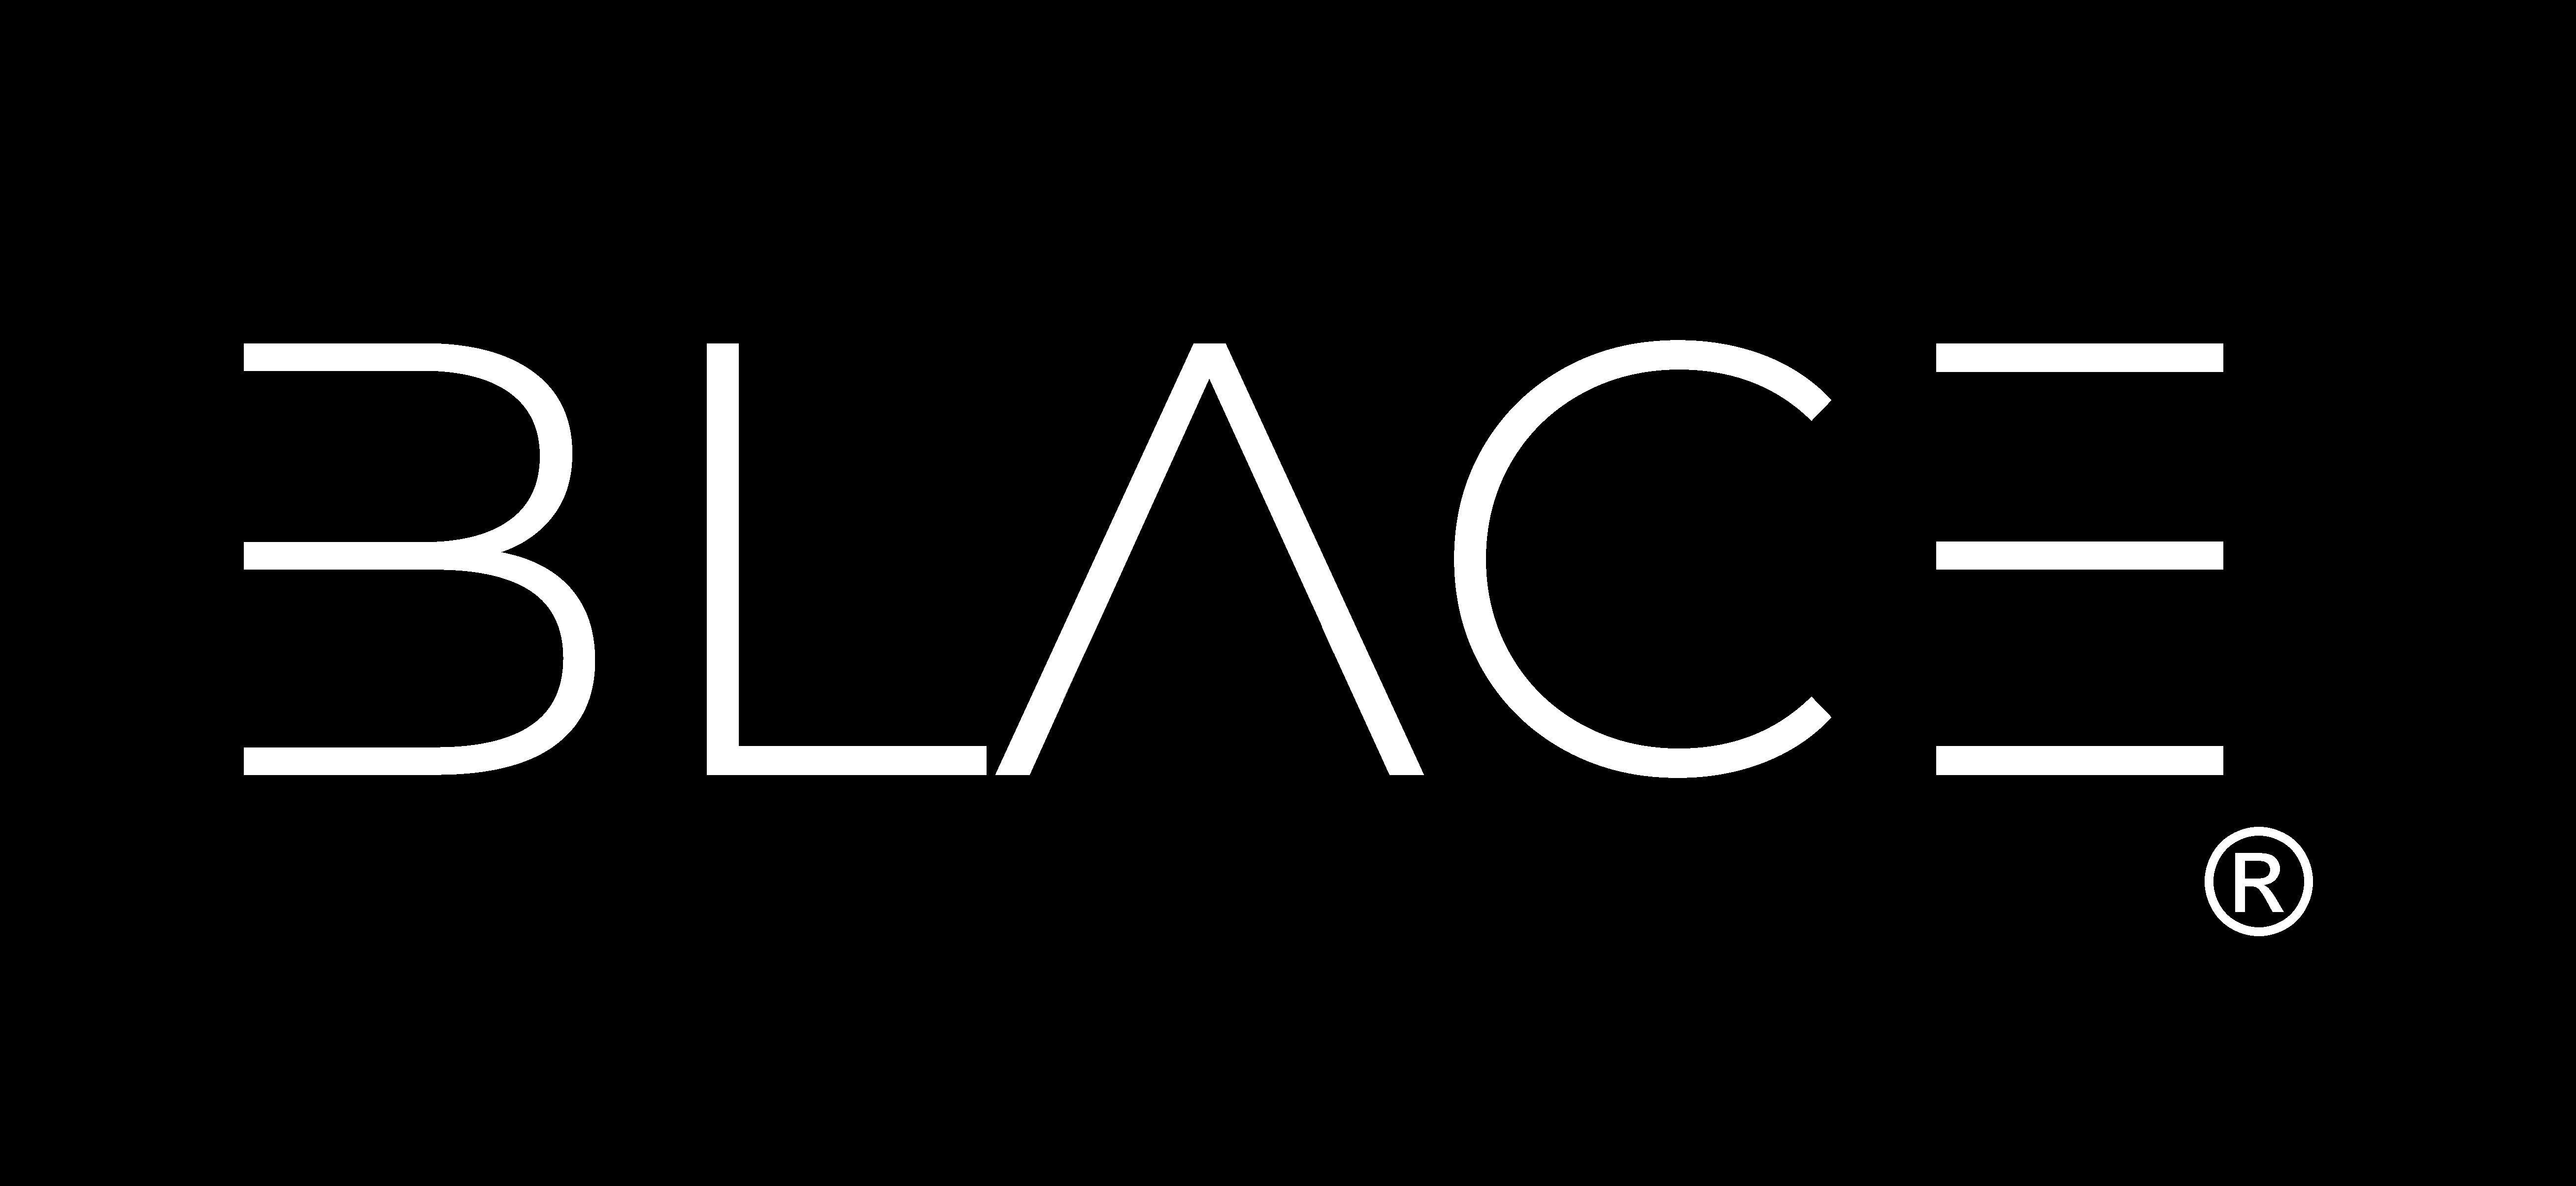 logo-blace.png (252 KB)